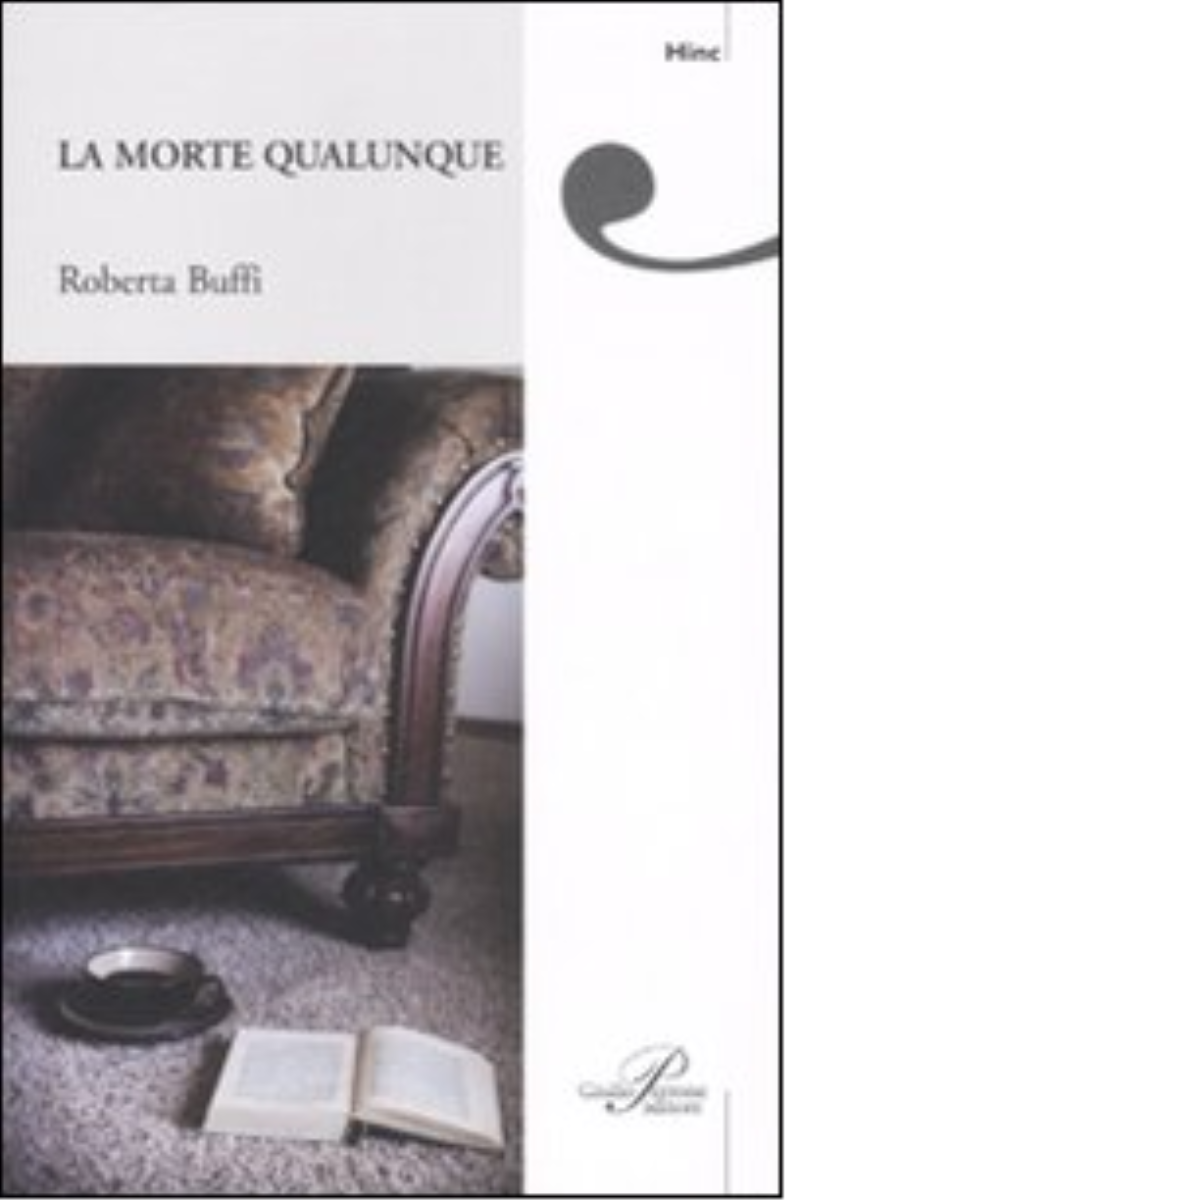 La morte qualunque - Roberta Buffi - Perrone editore, 2007